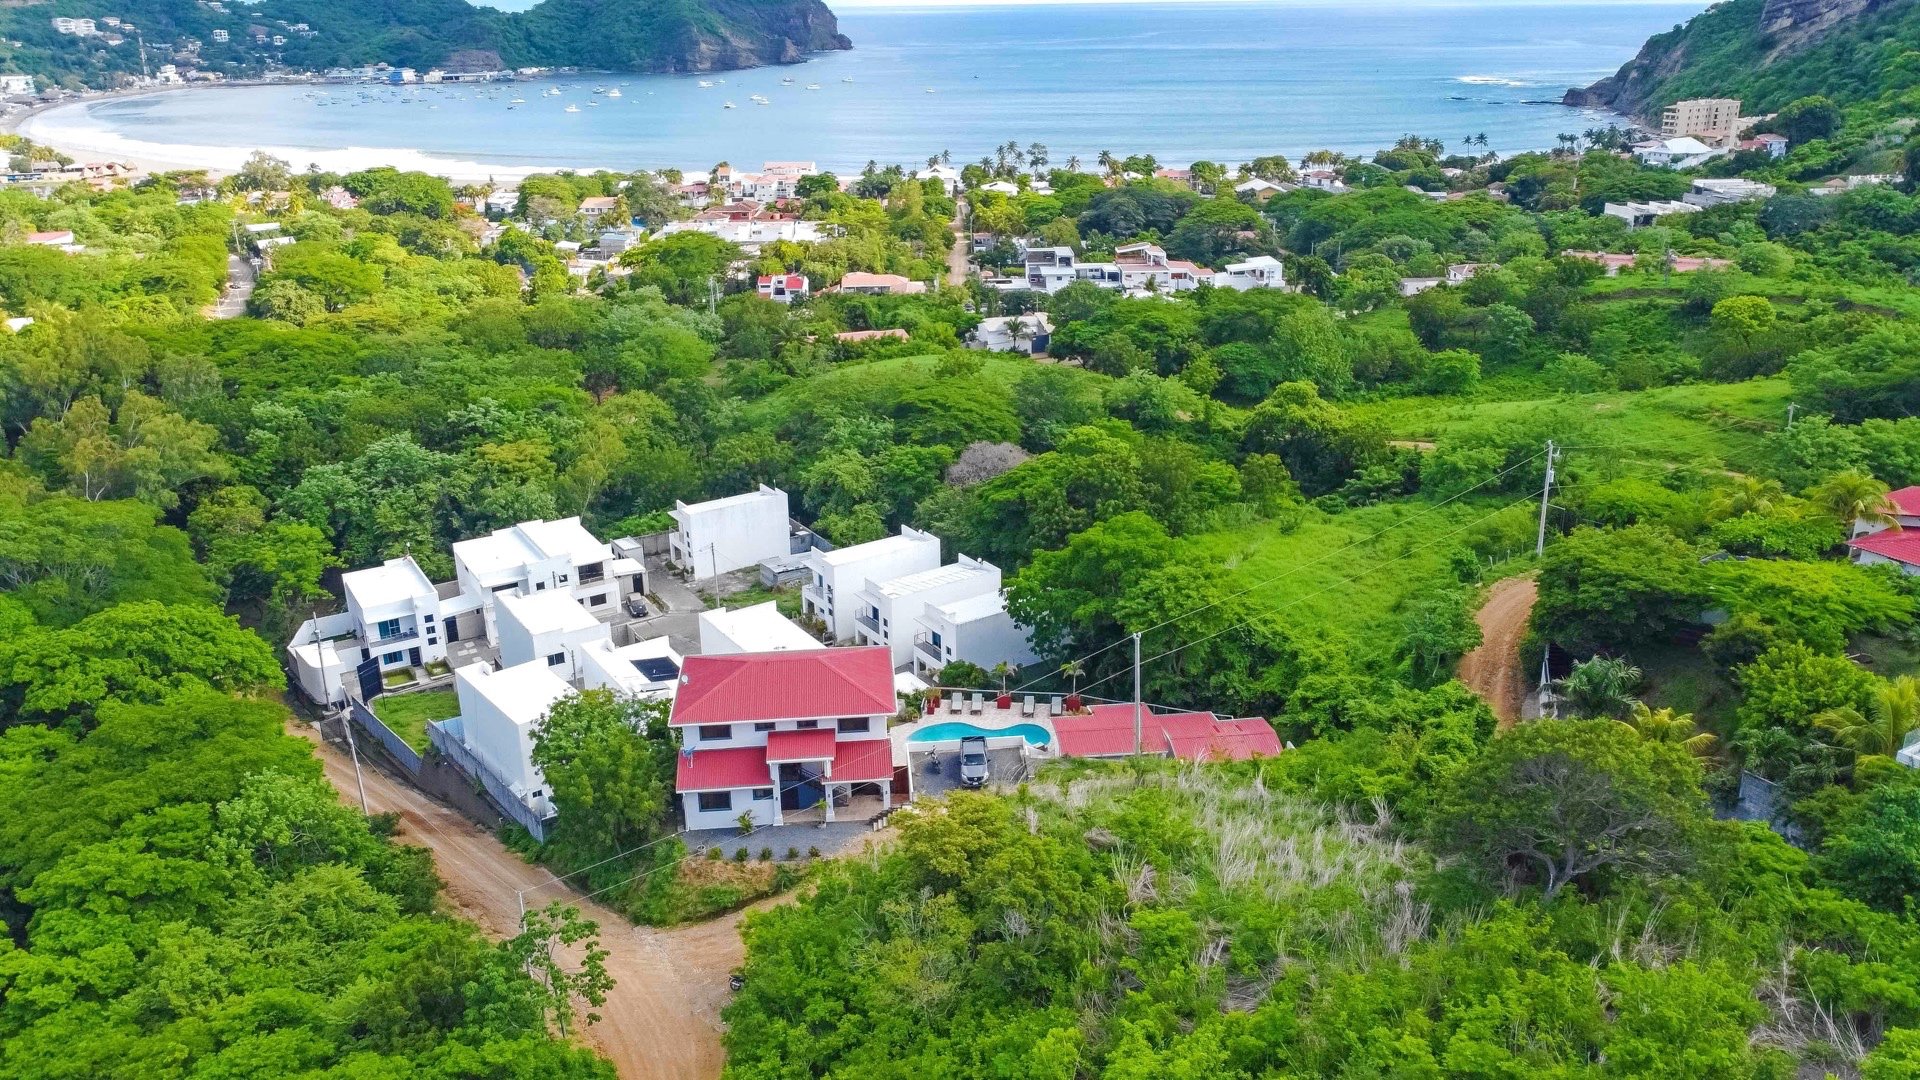 Home House Property Real Estate BnB For Sale San Juan Del Sur Nicaragua 15.jpg